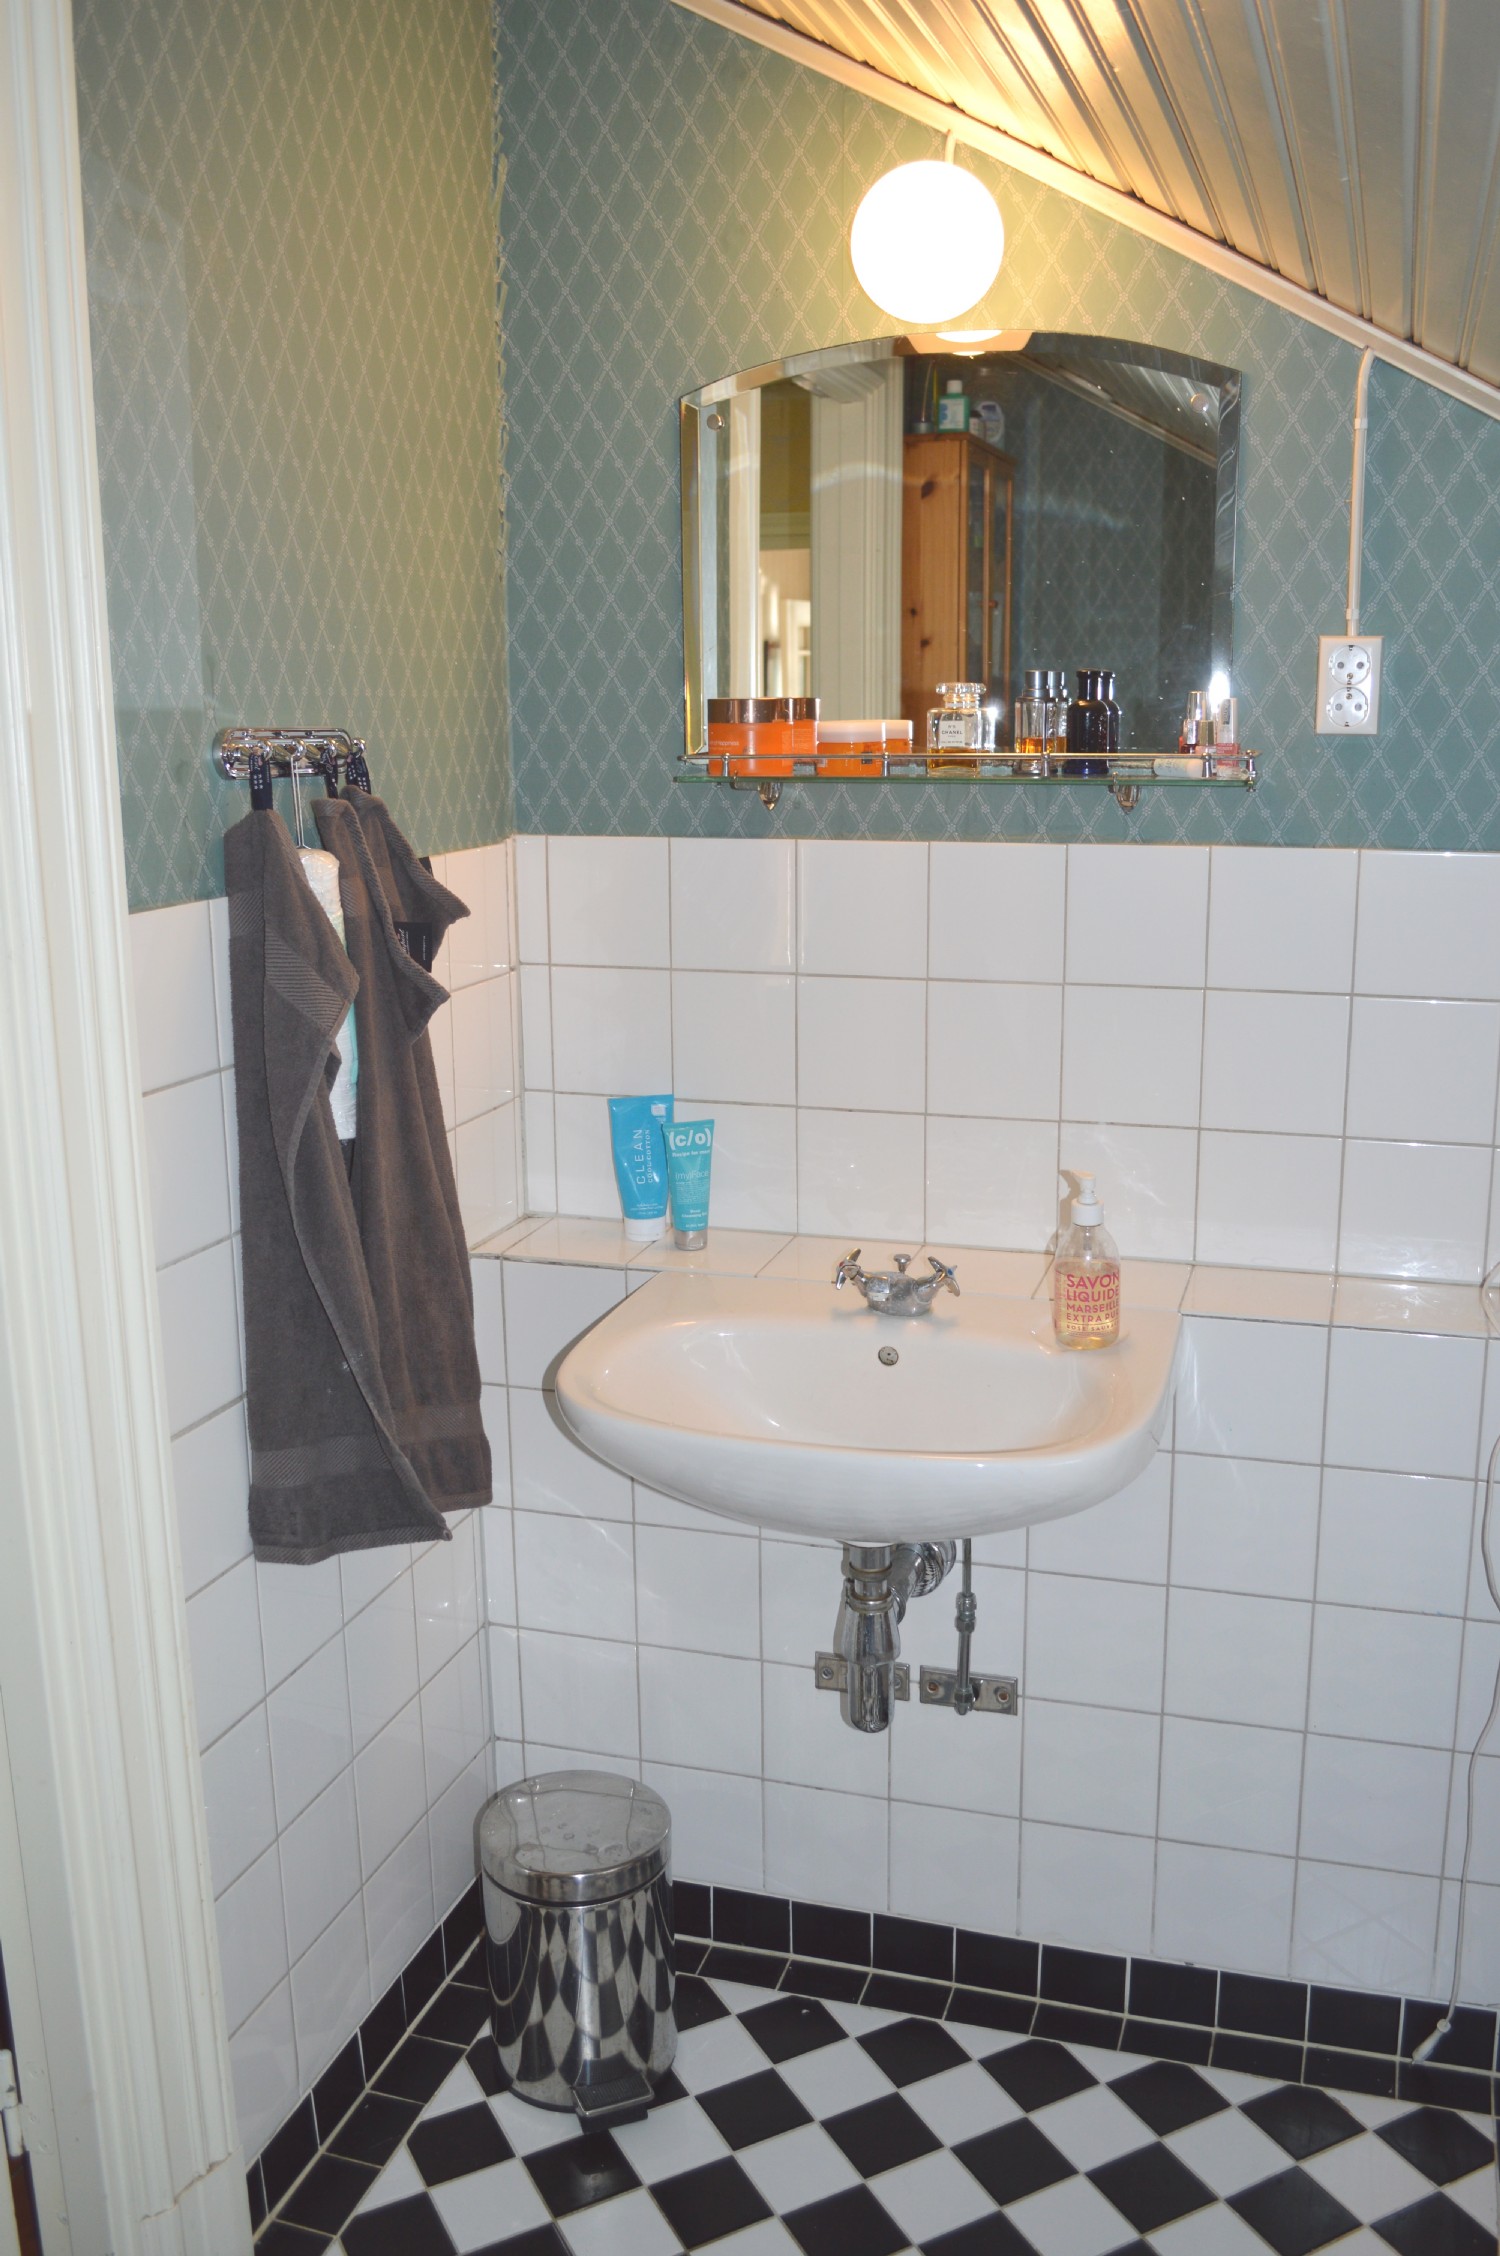 Övervåning badrum/ Upper floor bath room 